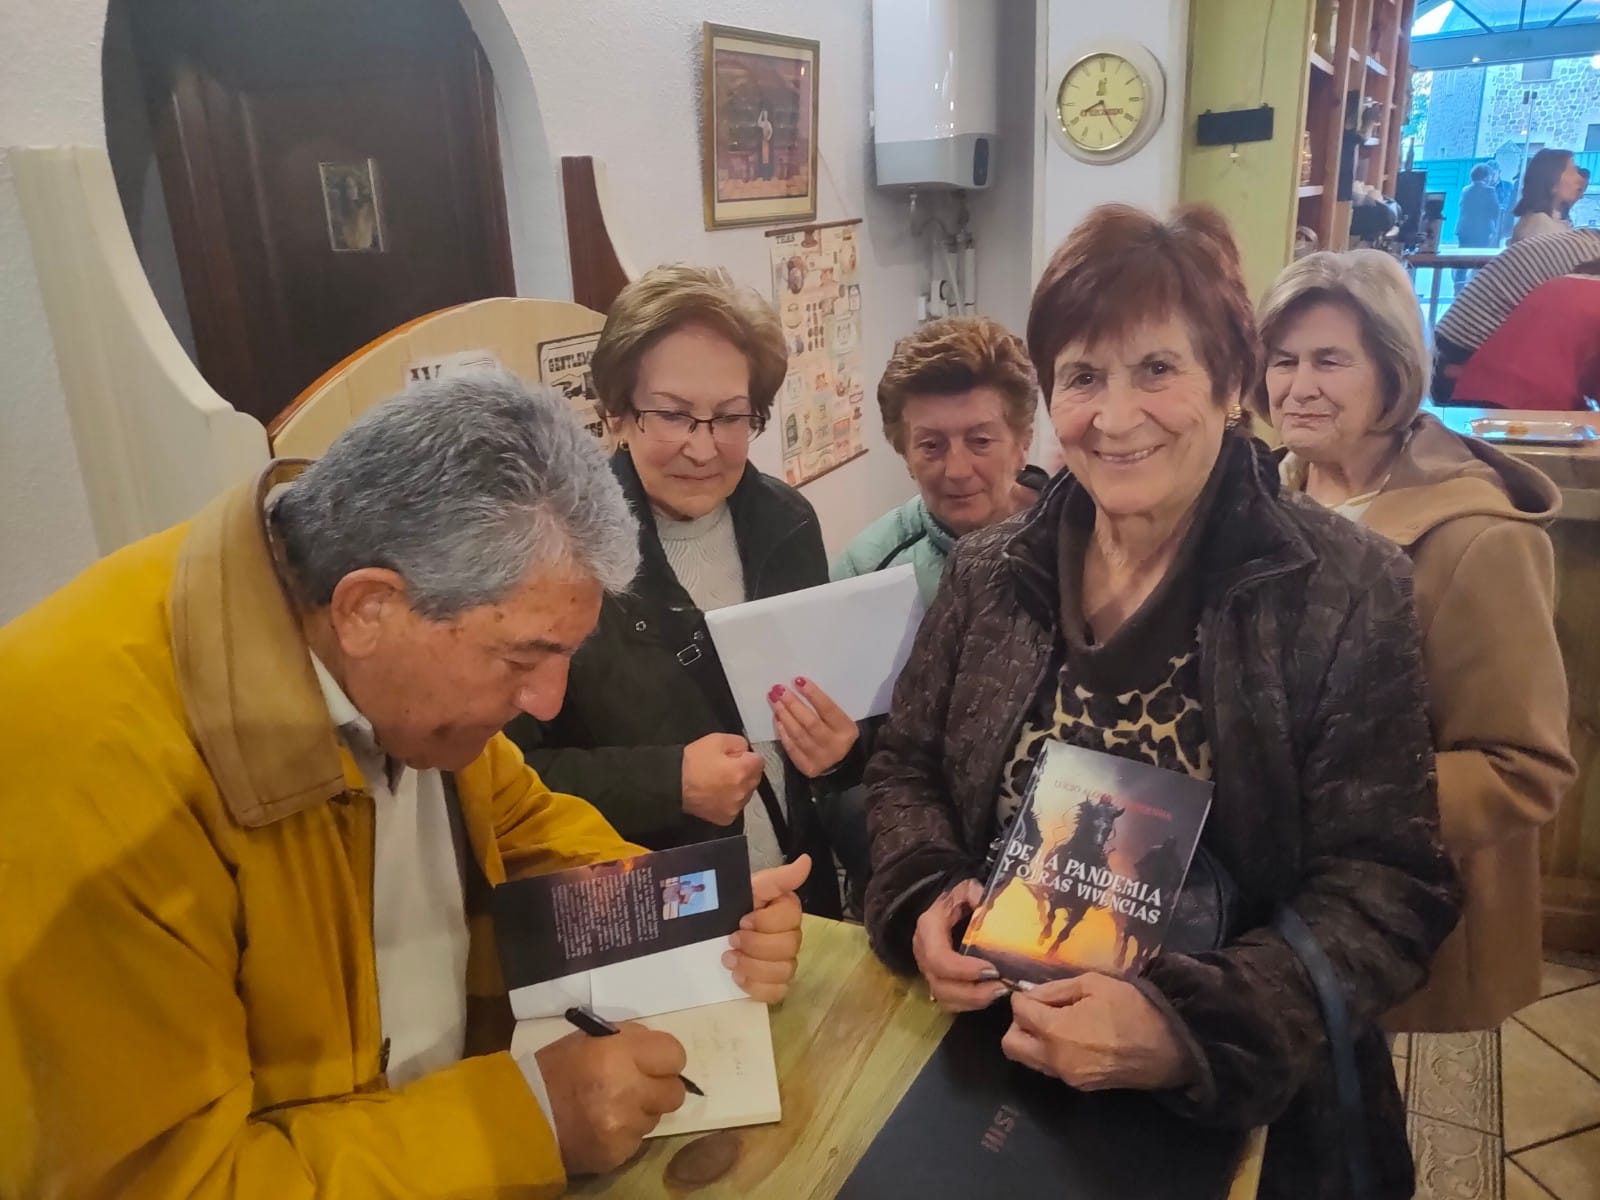 El escritor serrano Lucio Alonso Marquina presenta con enorme éxito su libro "De la Pandemia y otras Vivencias" en la Cafetería las Nubes de Salas de los Infantes